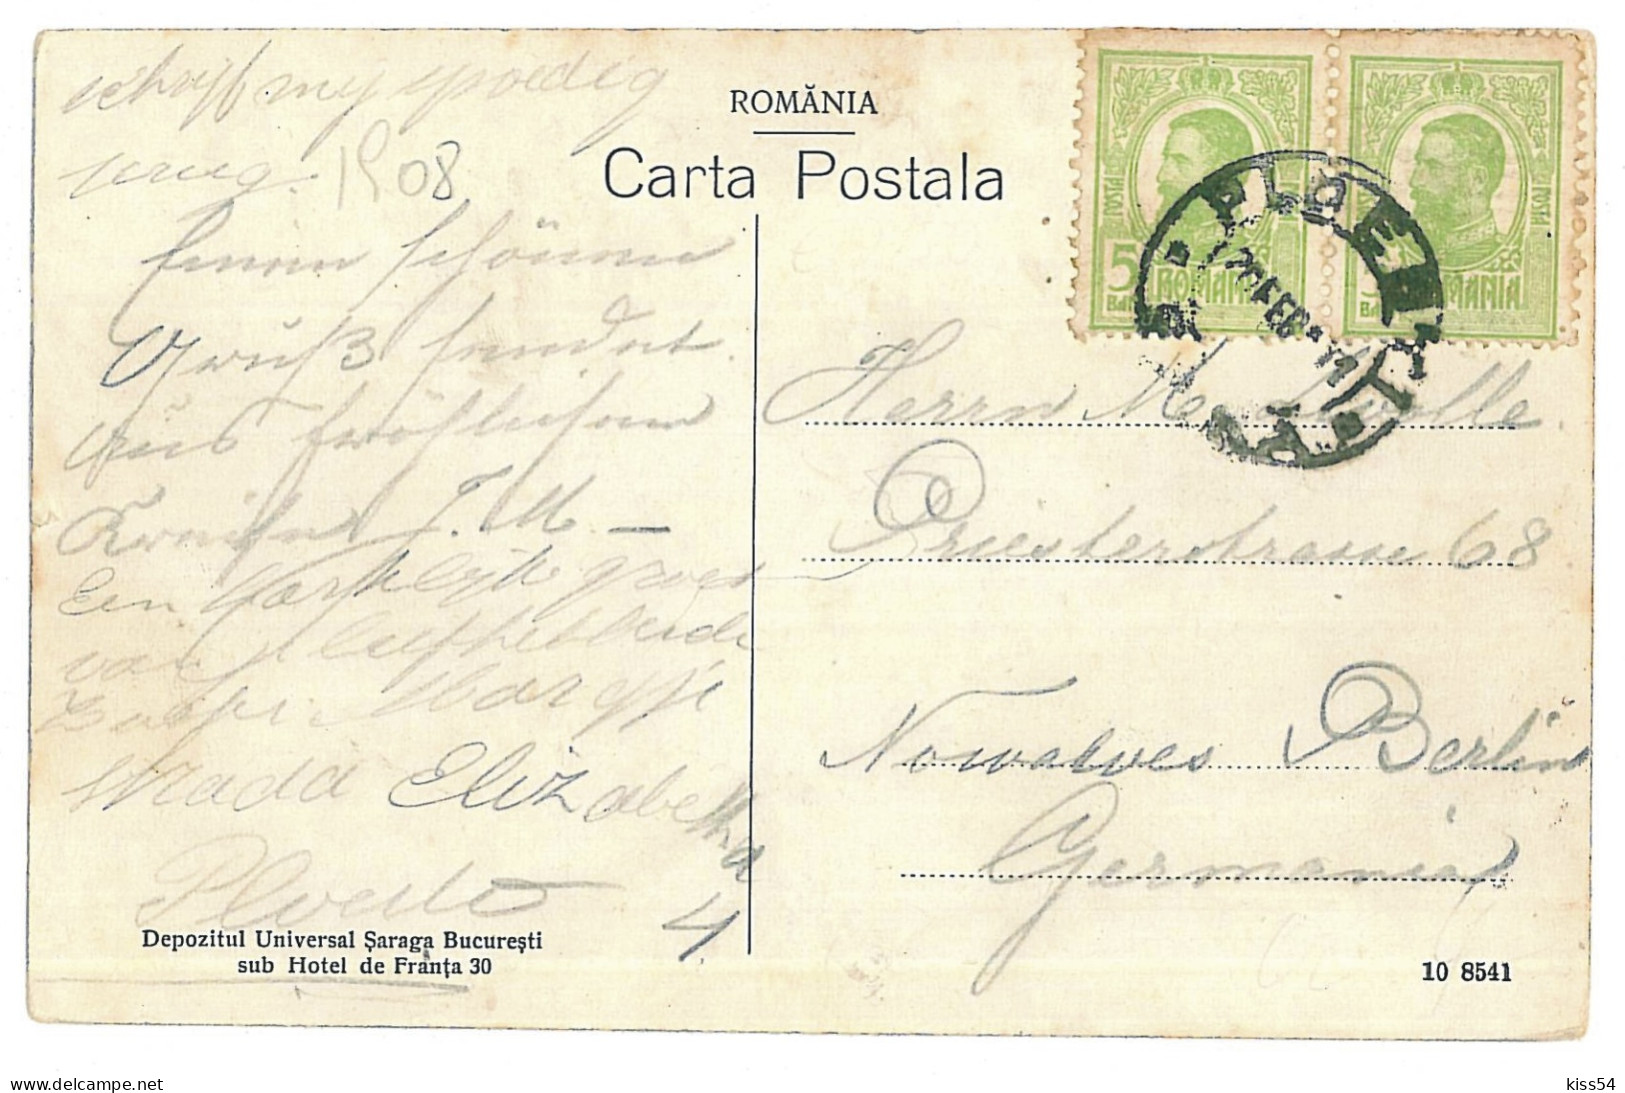 RO 84 - 11493 PLOIESTI, Market, Romania - Old Postcard - Used - 1908 - Rumänien